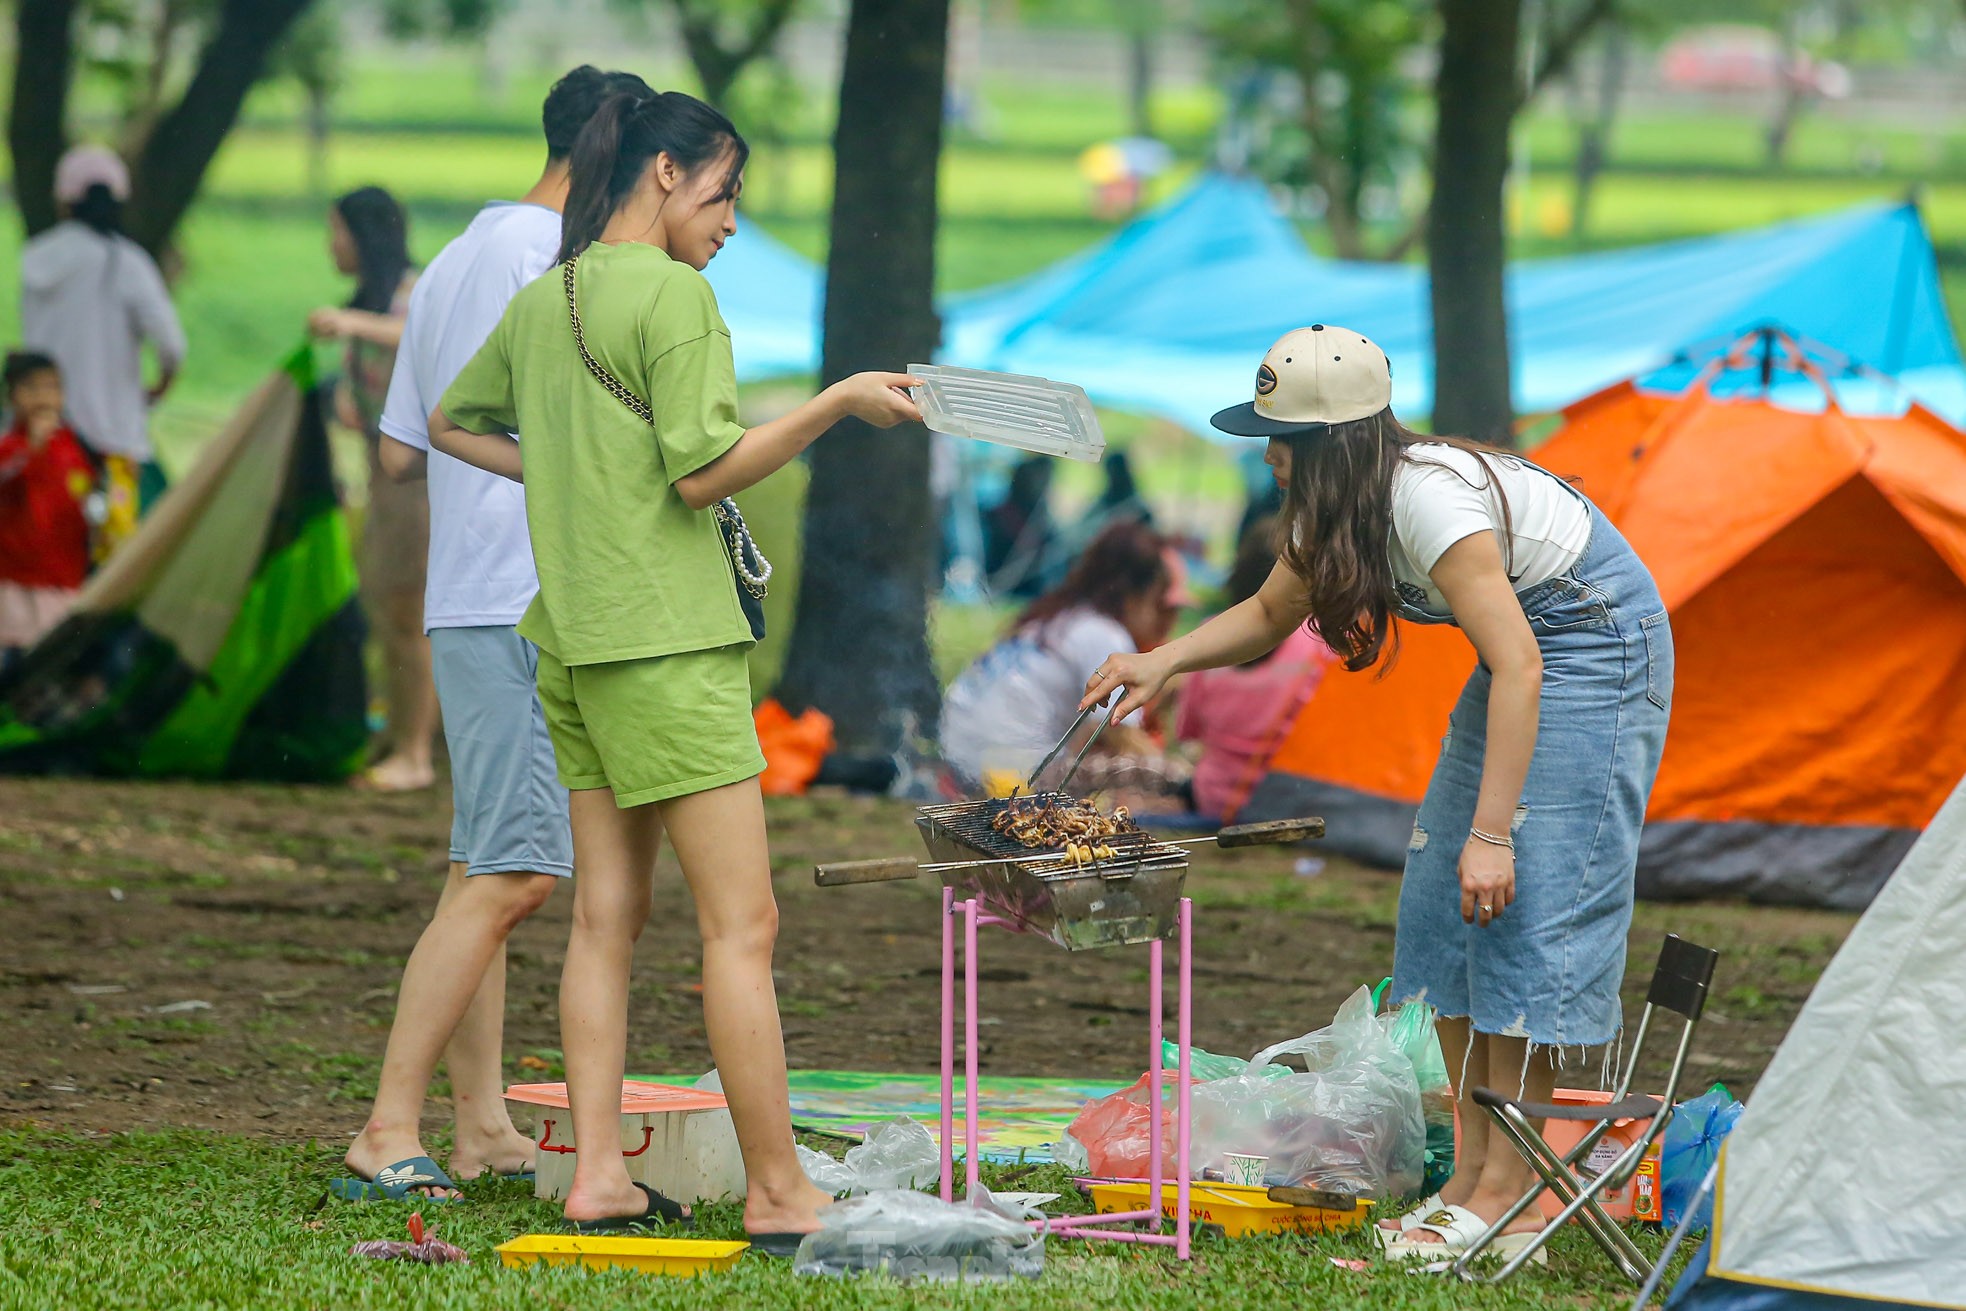 Hàng nghìn người đổ về công viên Yên Sở cắm trại trong ngày nghỉ lễ - Ảnh 8.